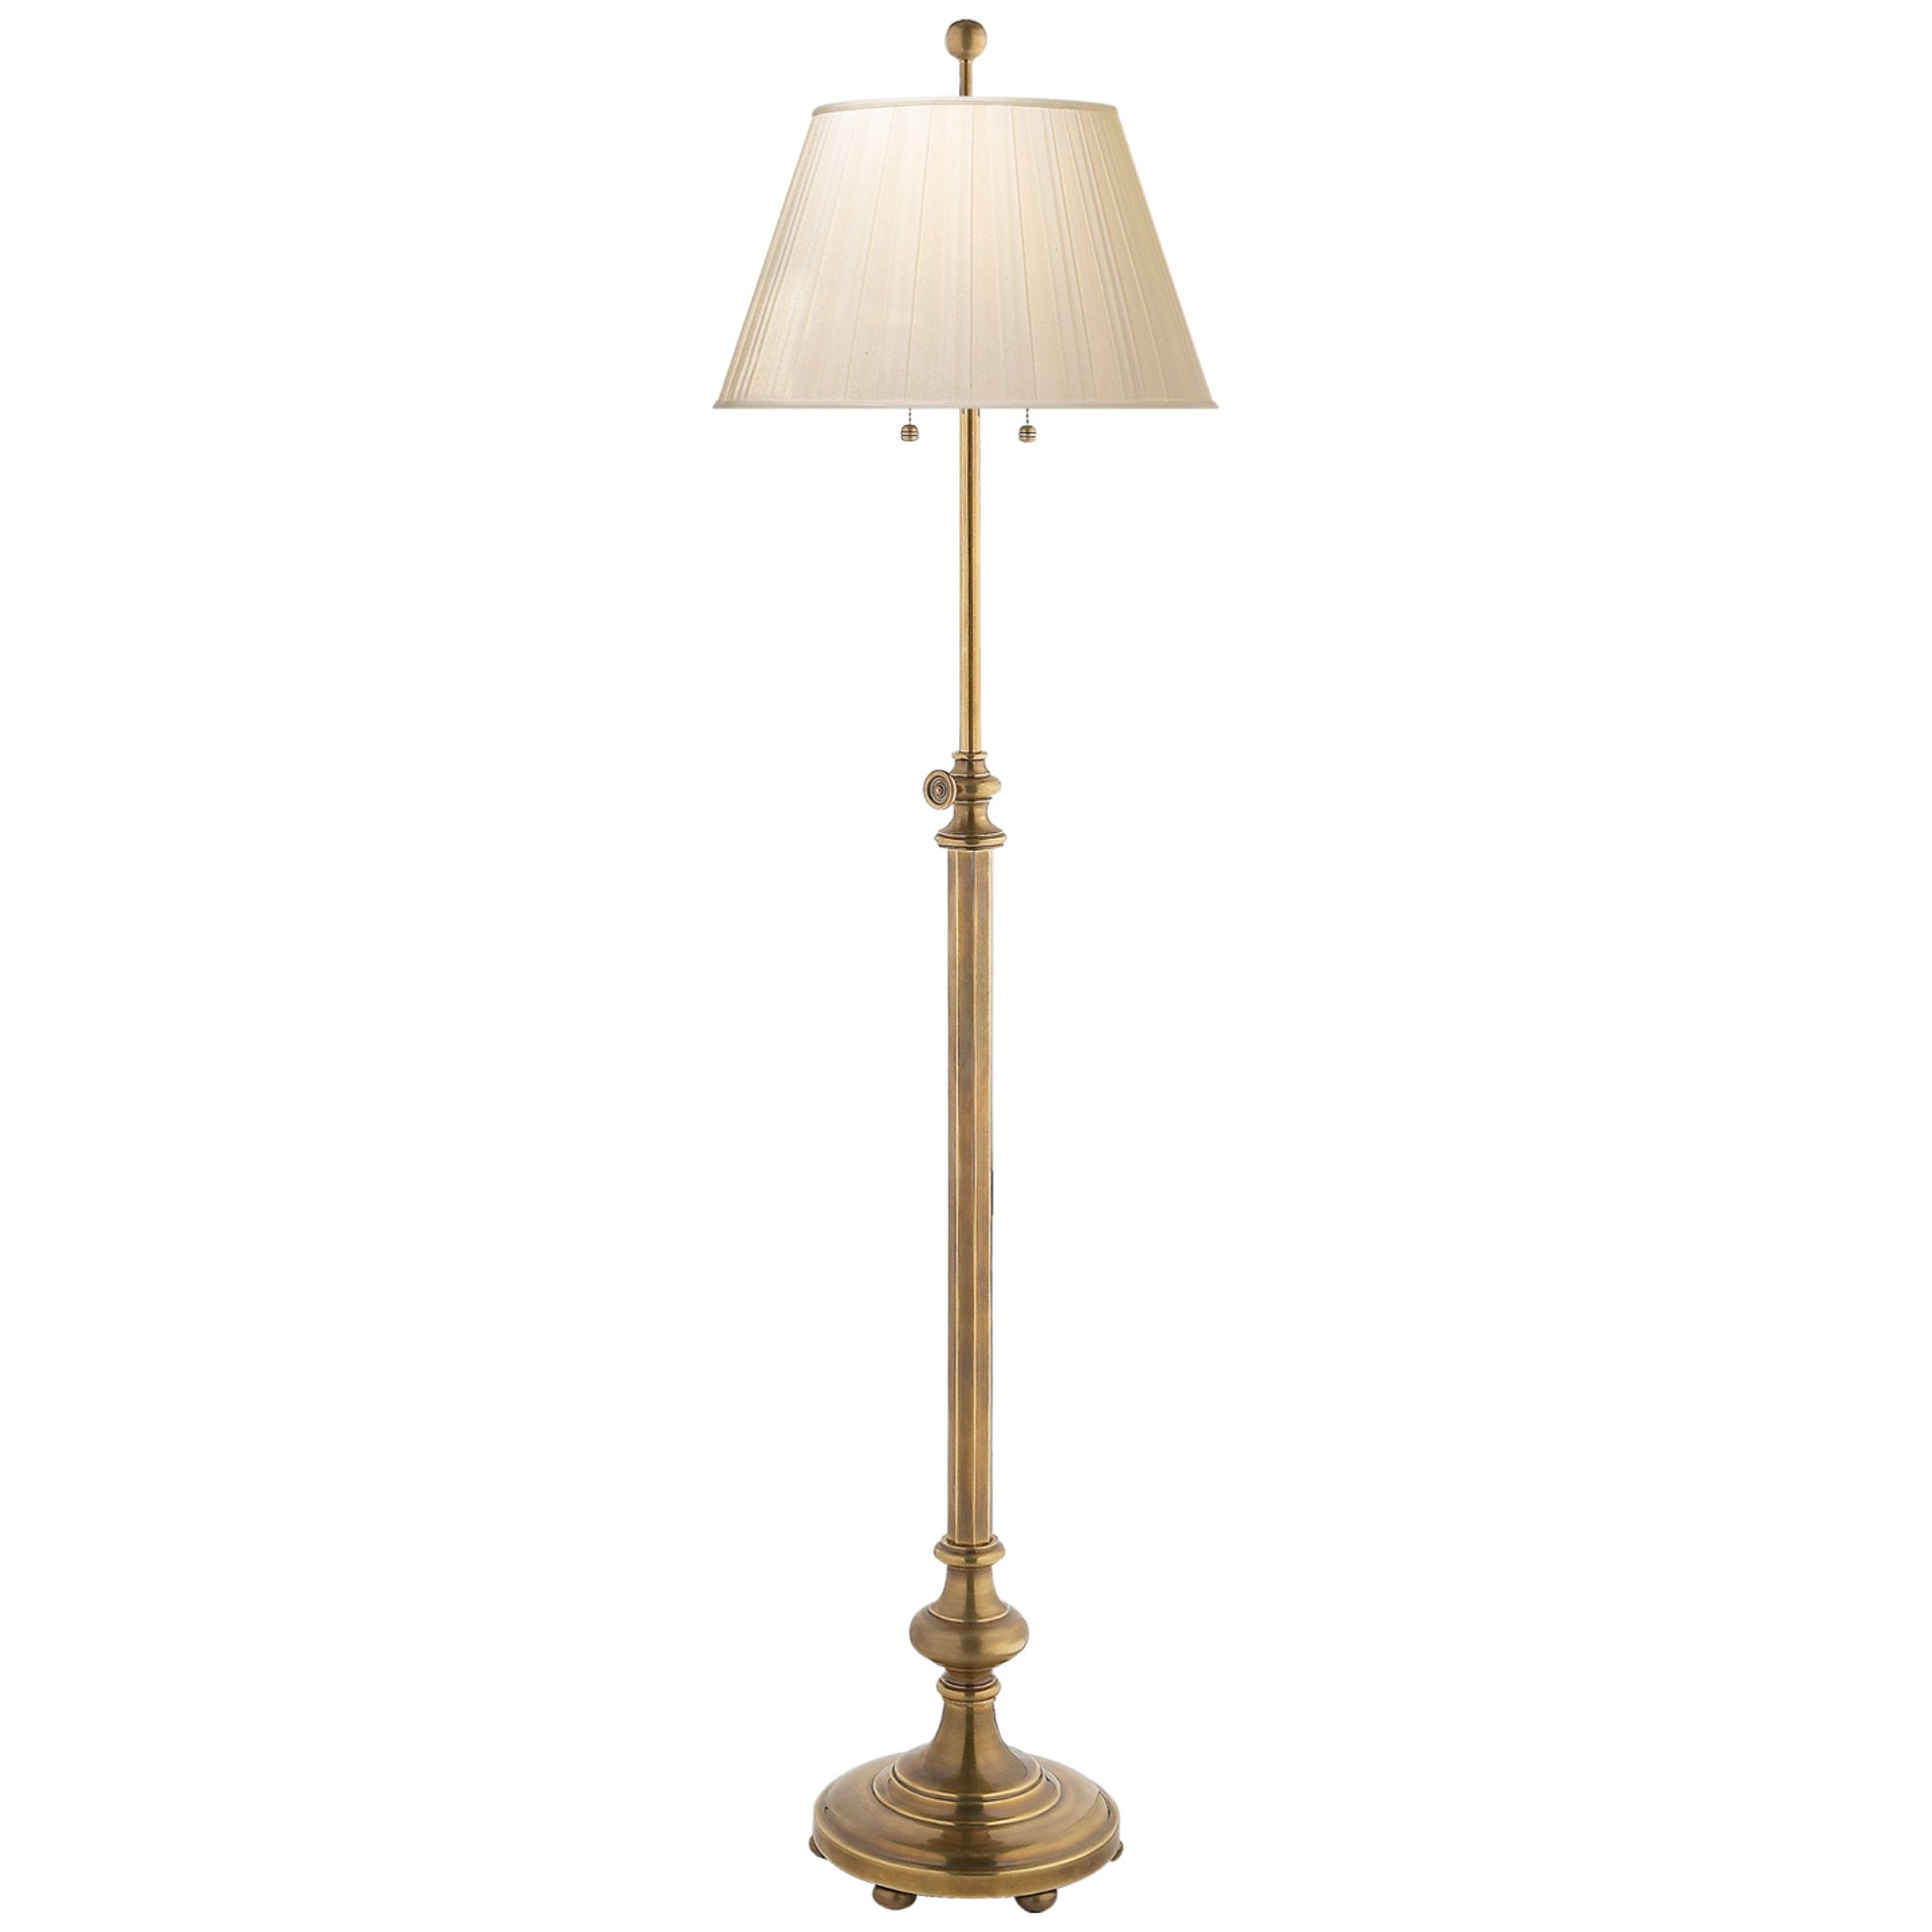 Chapman & Myers Overseas Adjustable Club Floor Lamp in Antique-Burnish